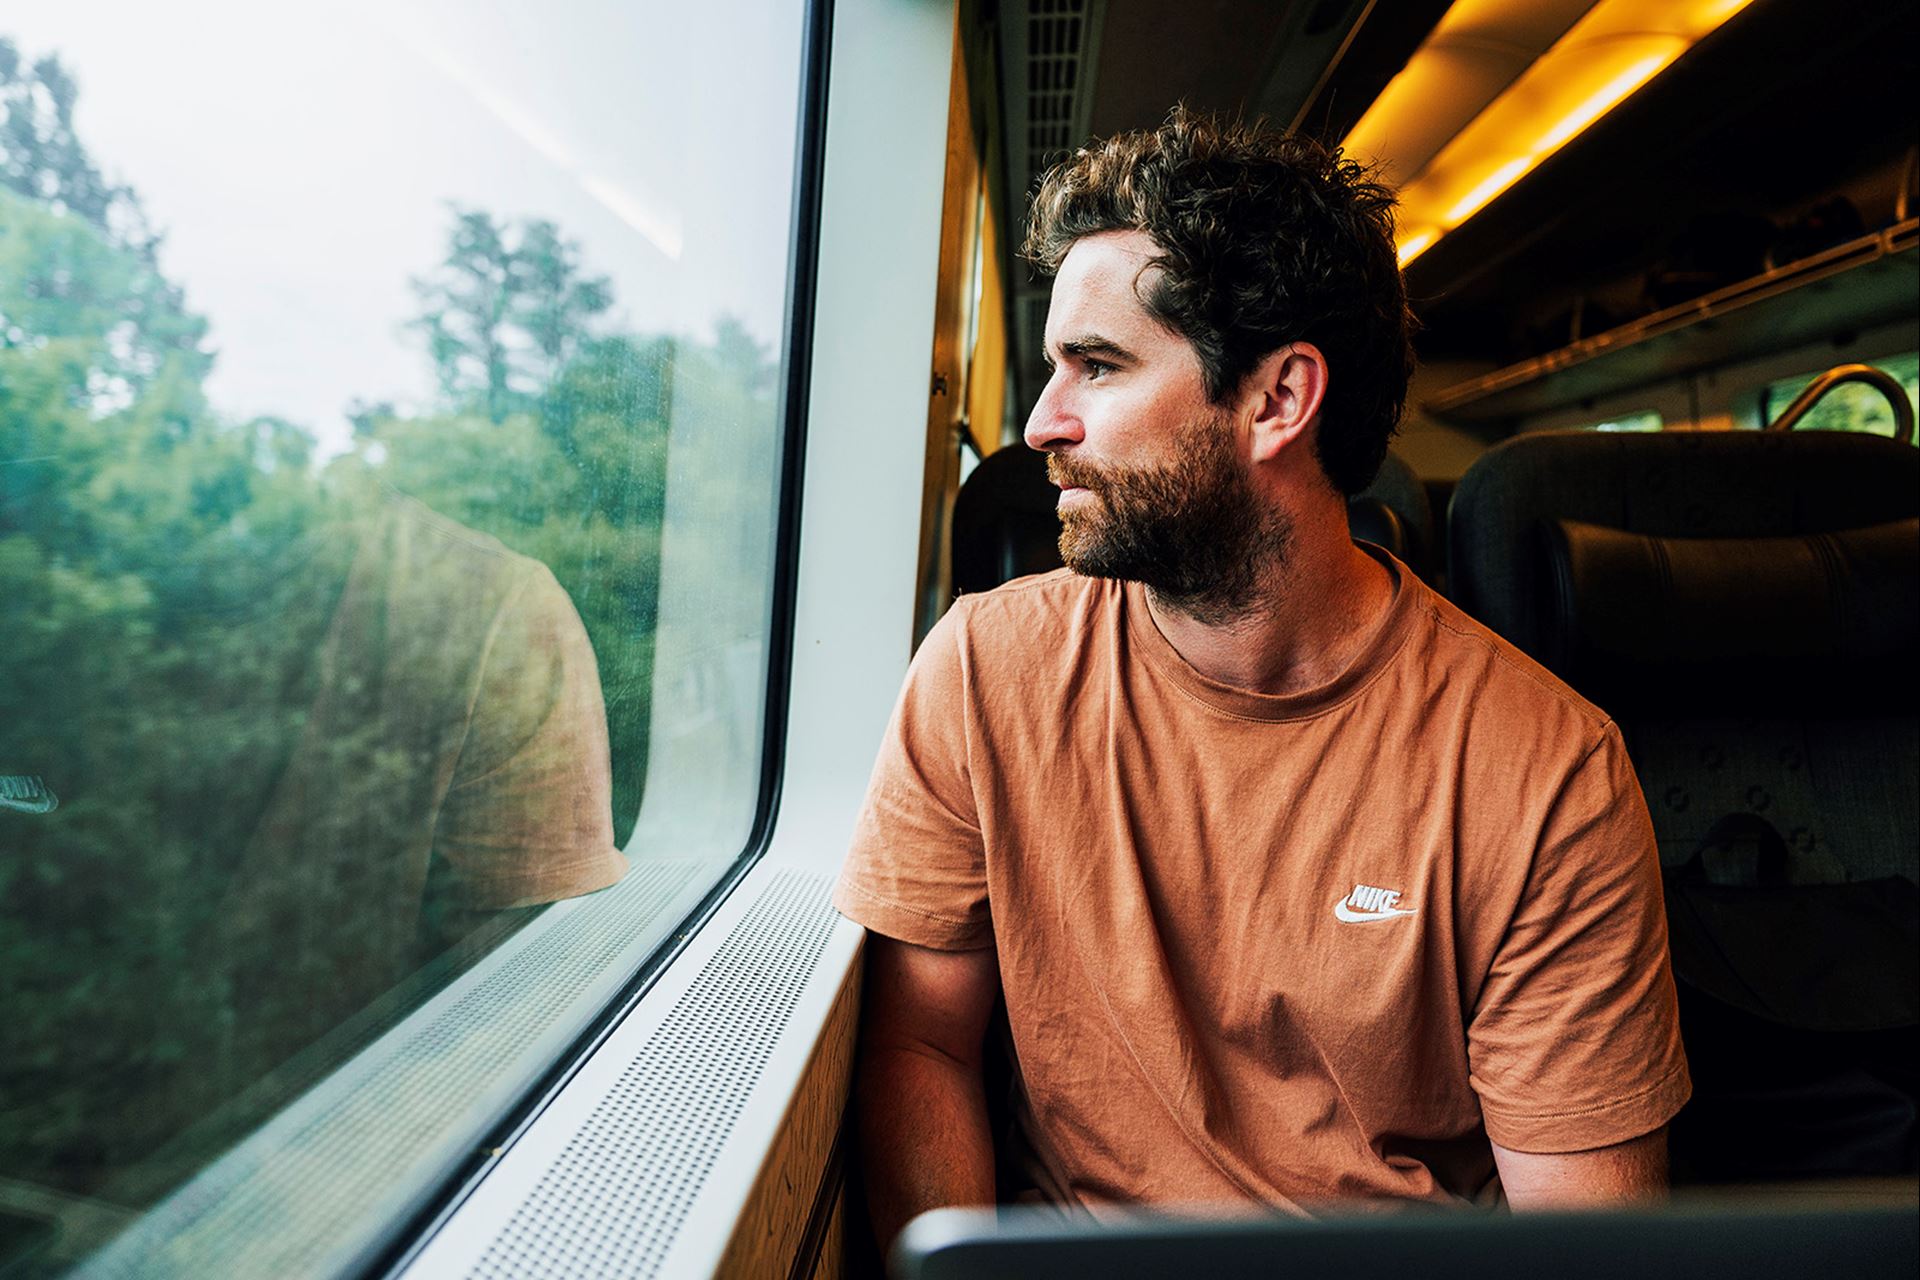 En kille sitter ombord ett tåg och tittar ut genom fönstret.